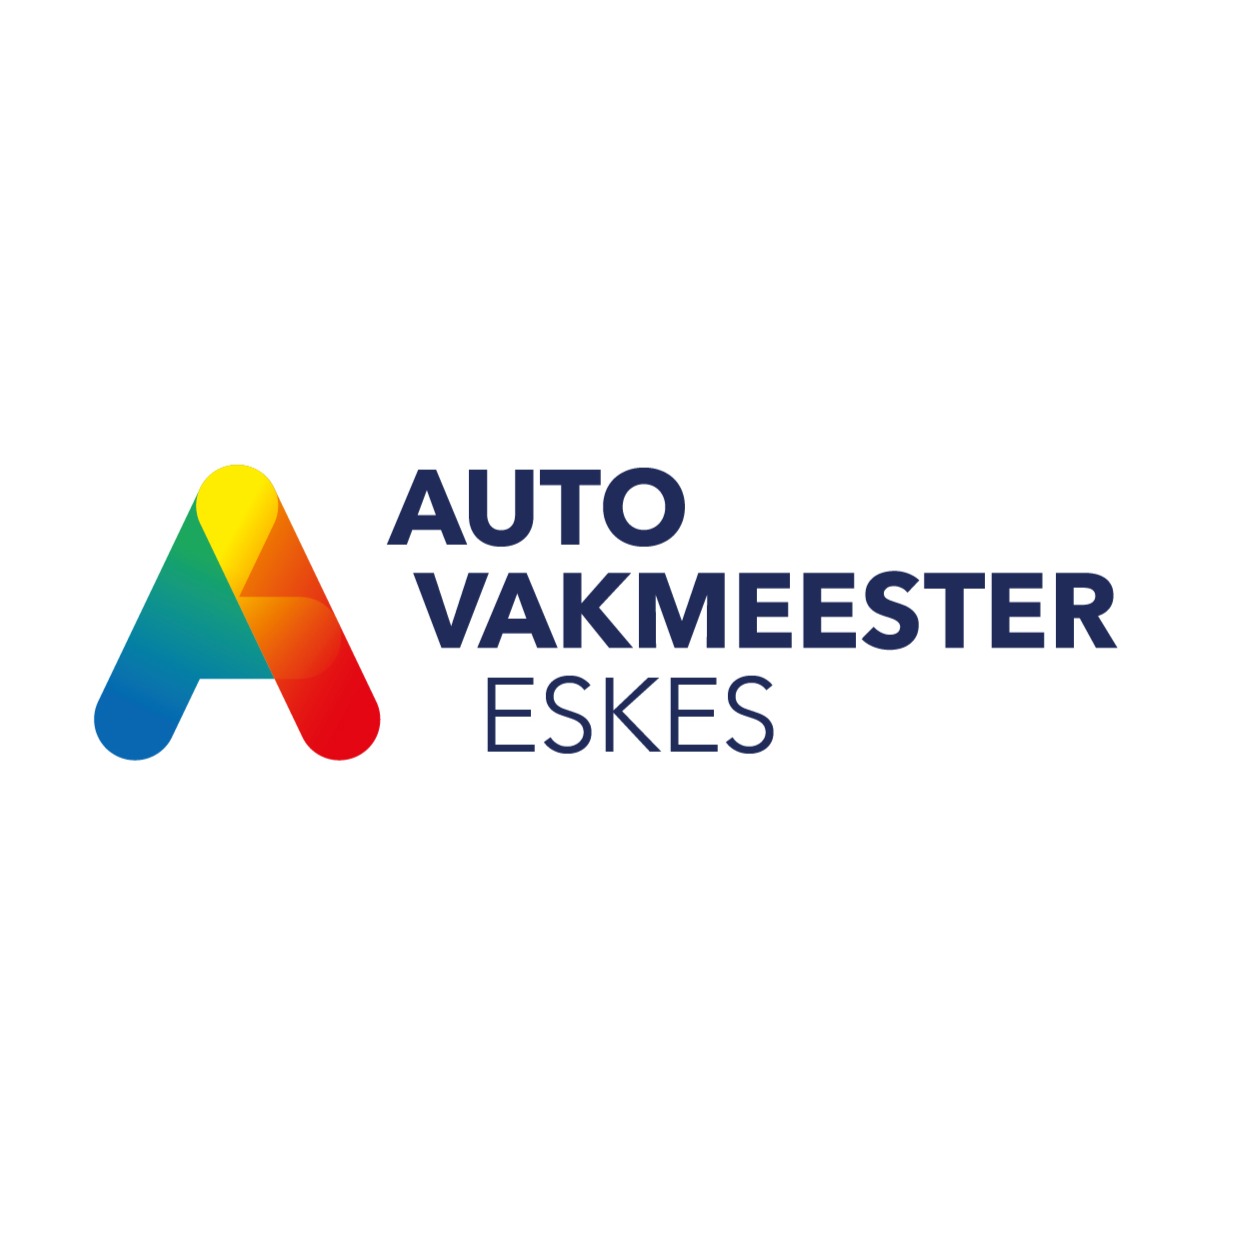 Autovakmeester Eskes Logo